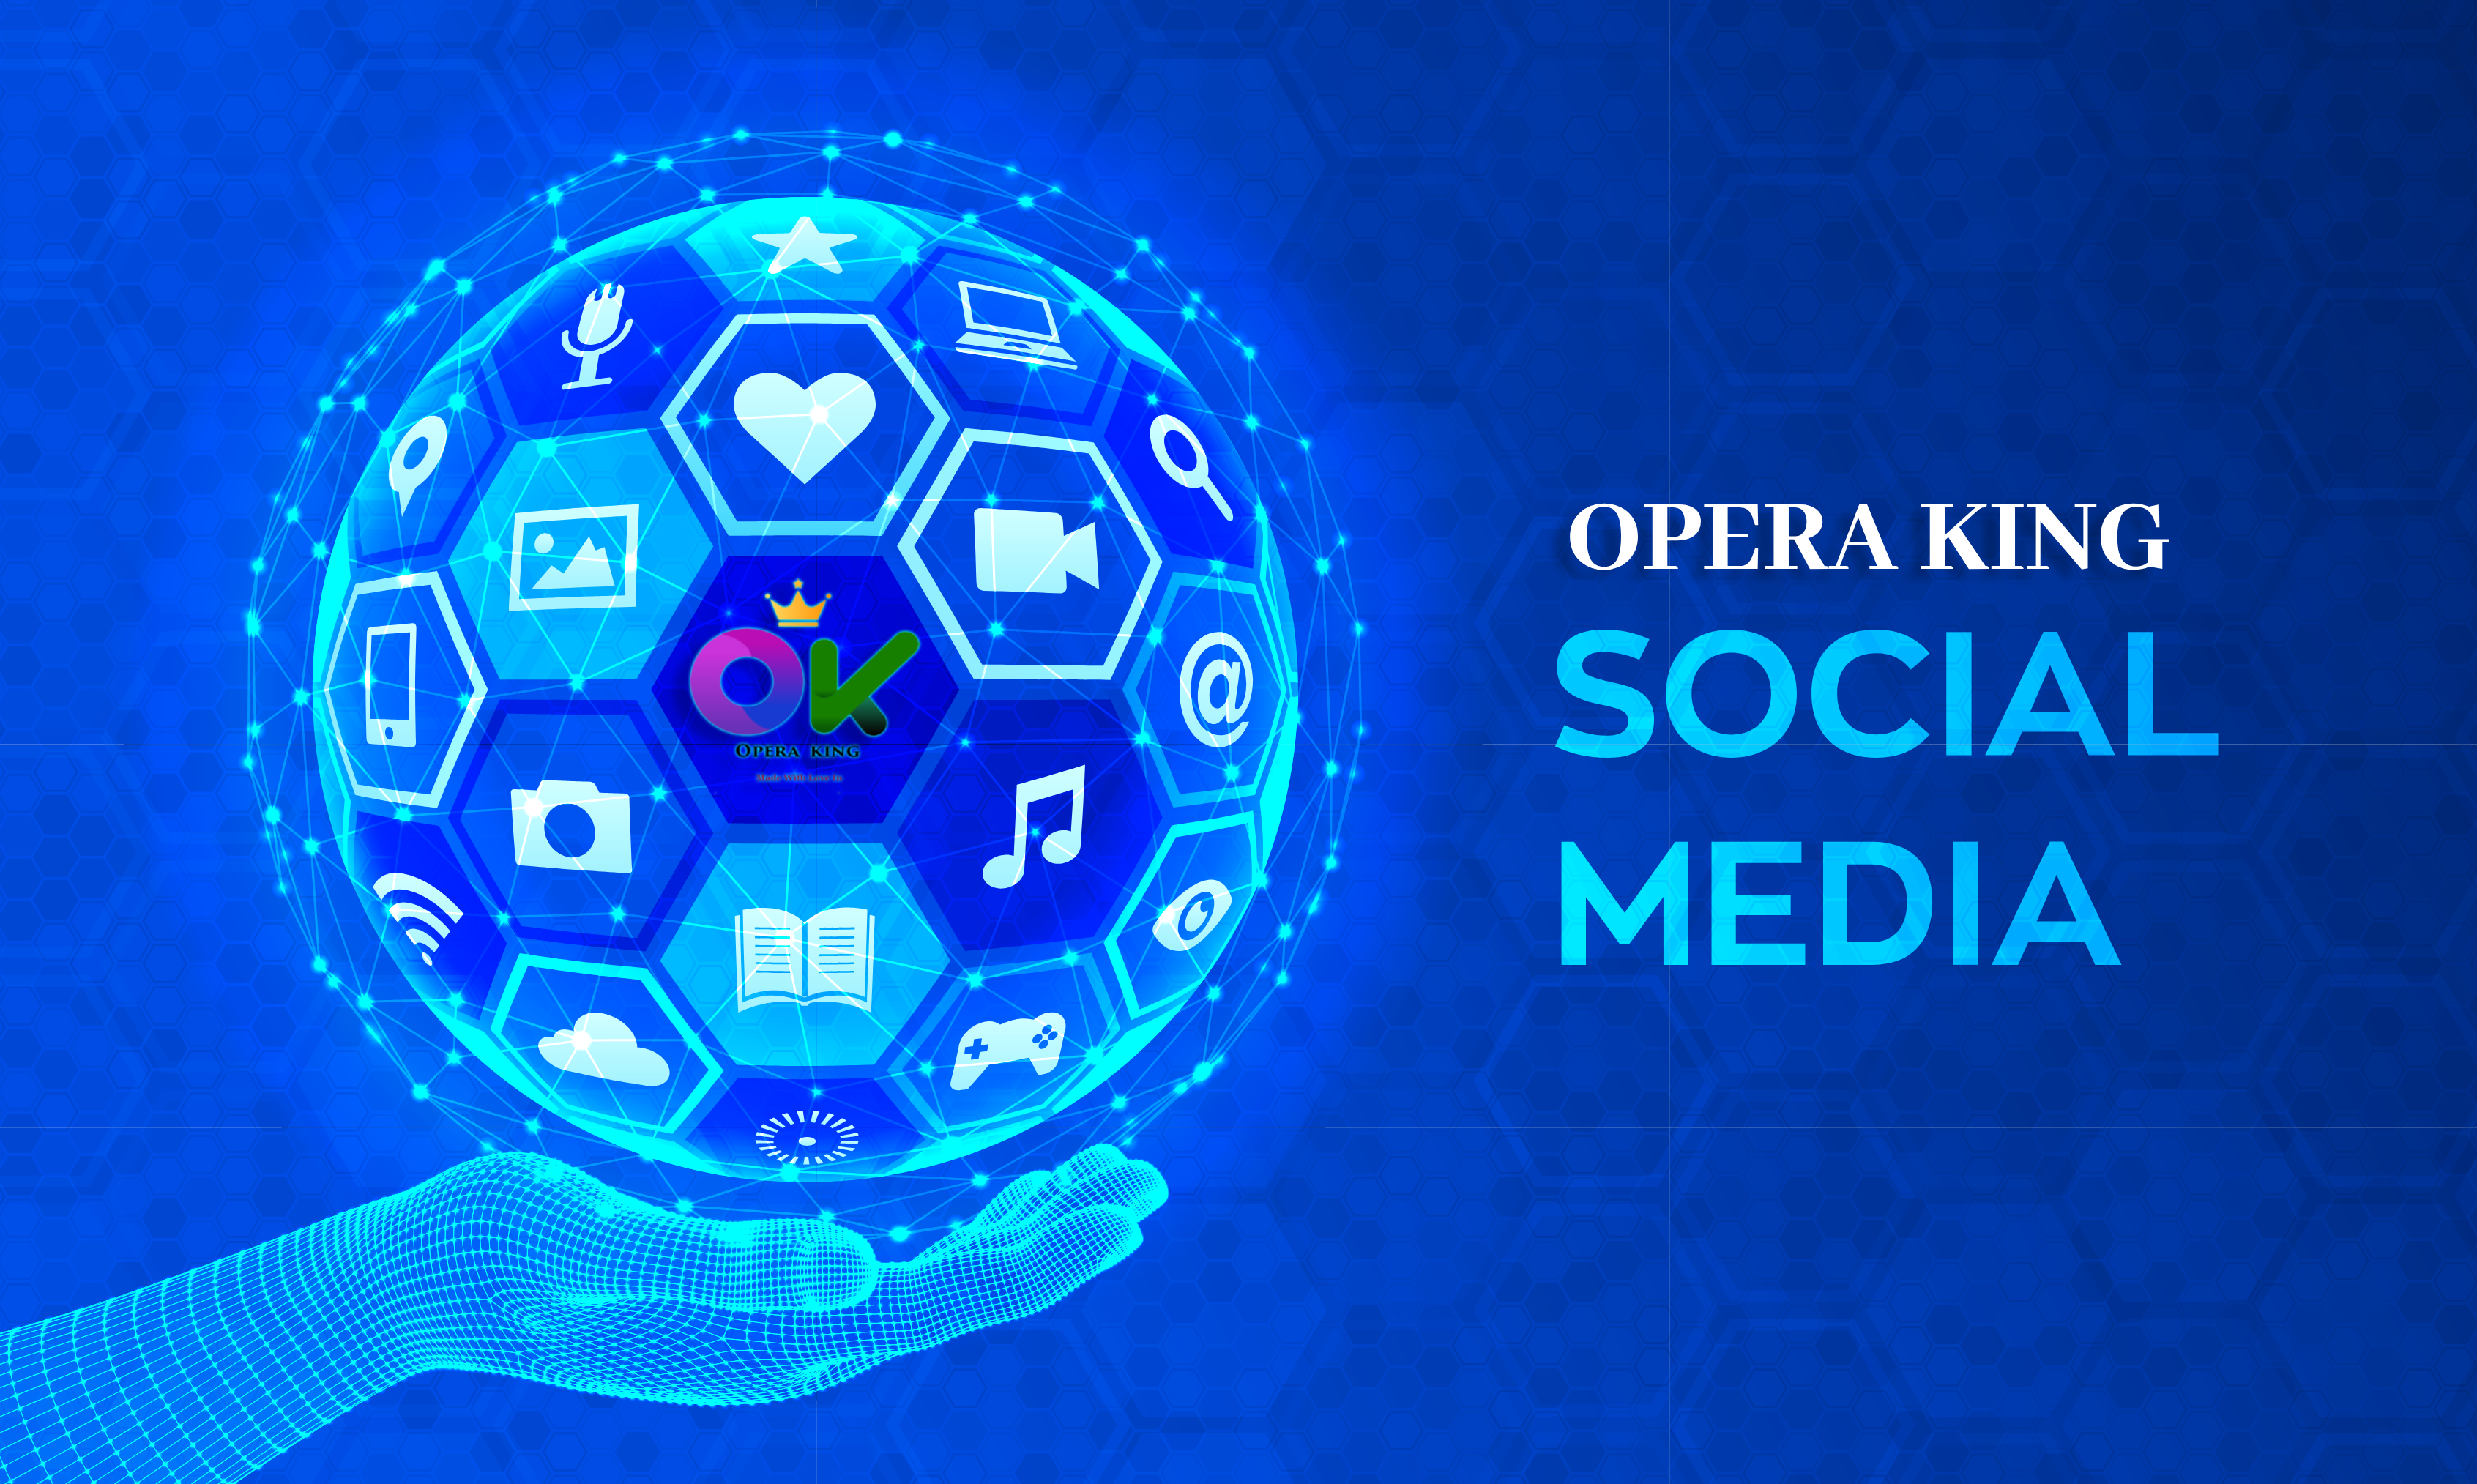 Opera King Apna Social Media Platform / ओपेरा किंग अपना सोशल मीडिया प्लेटफॉर्म